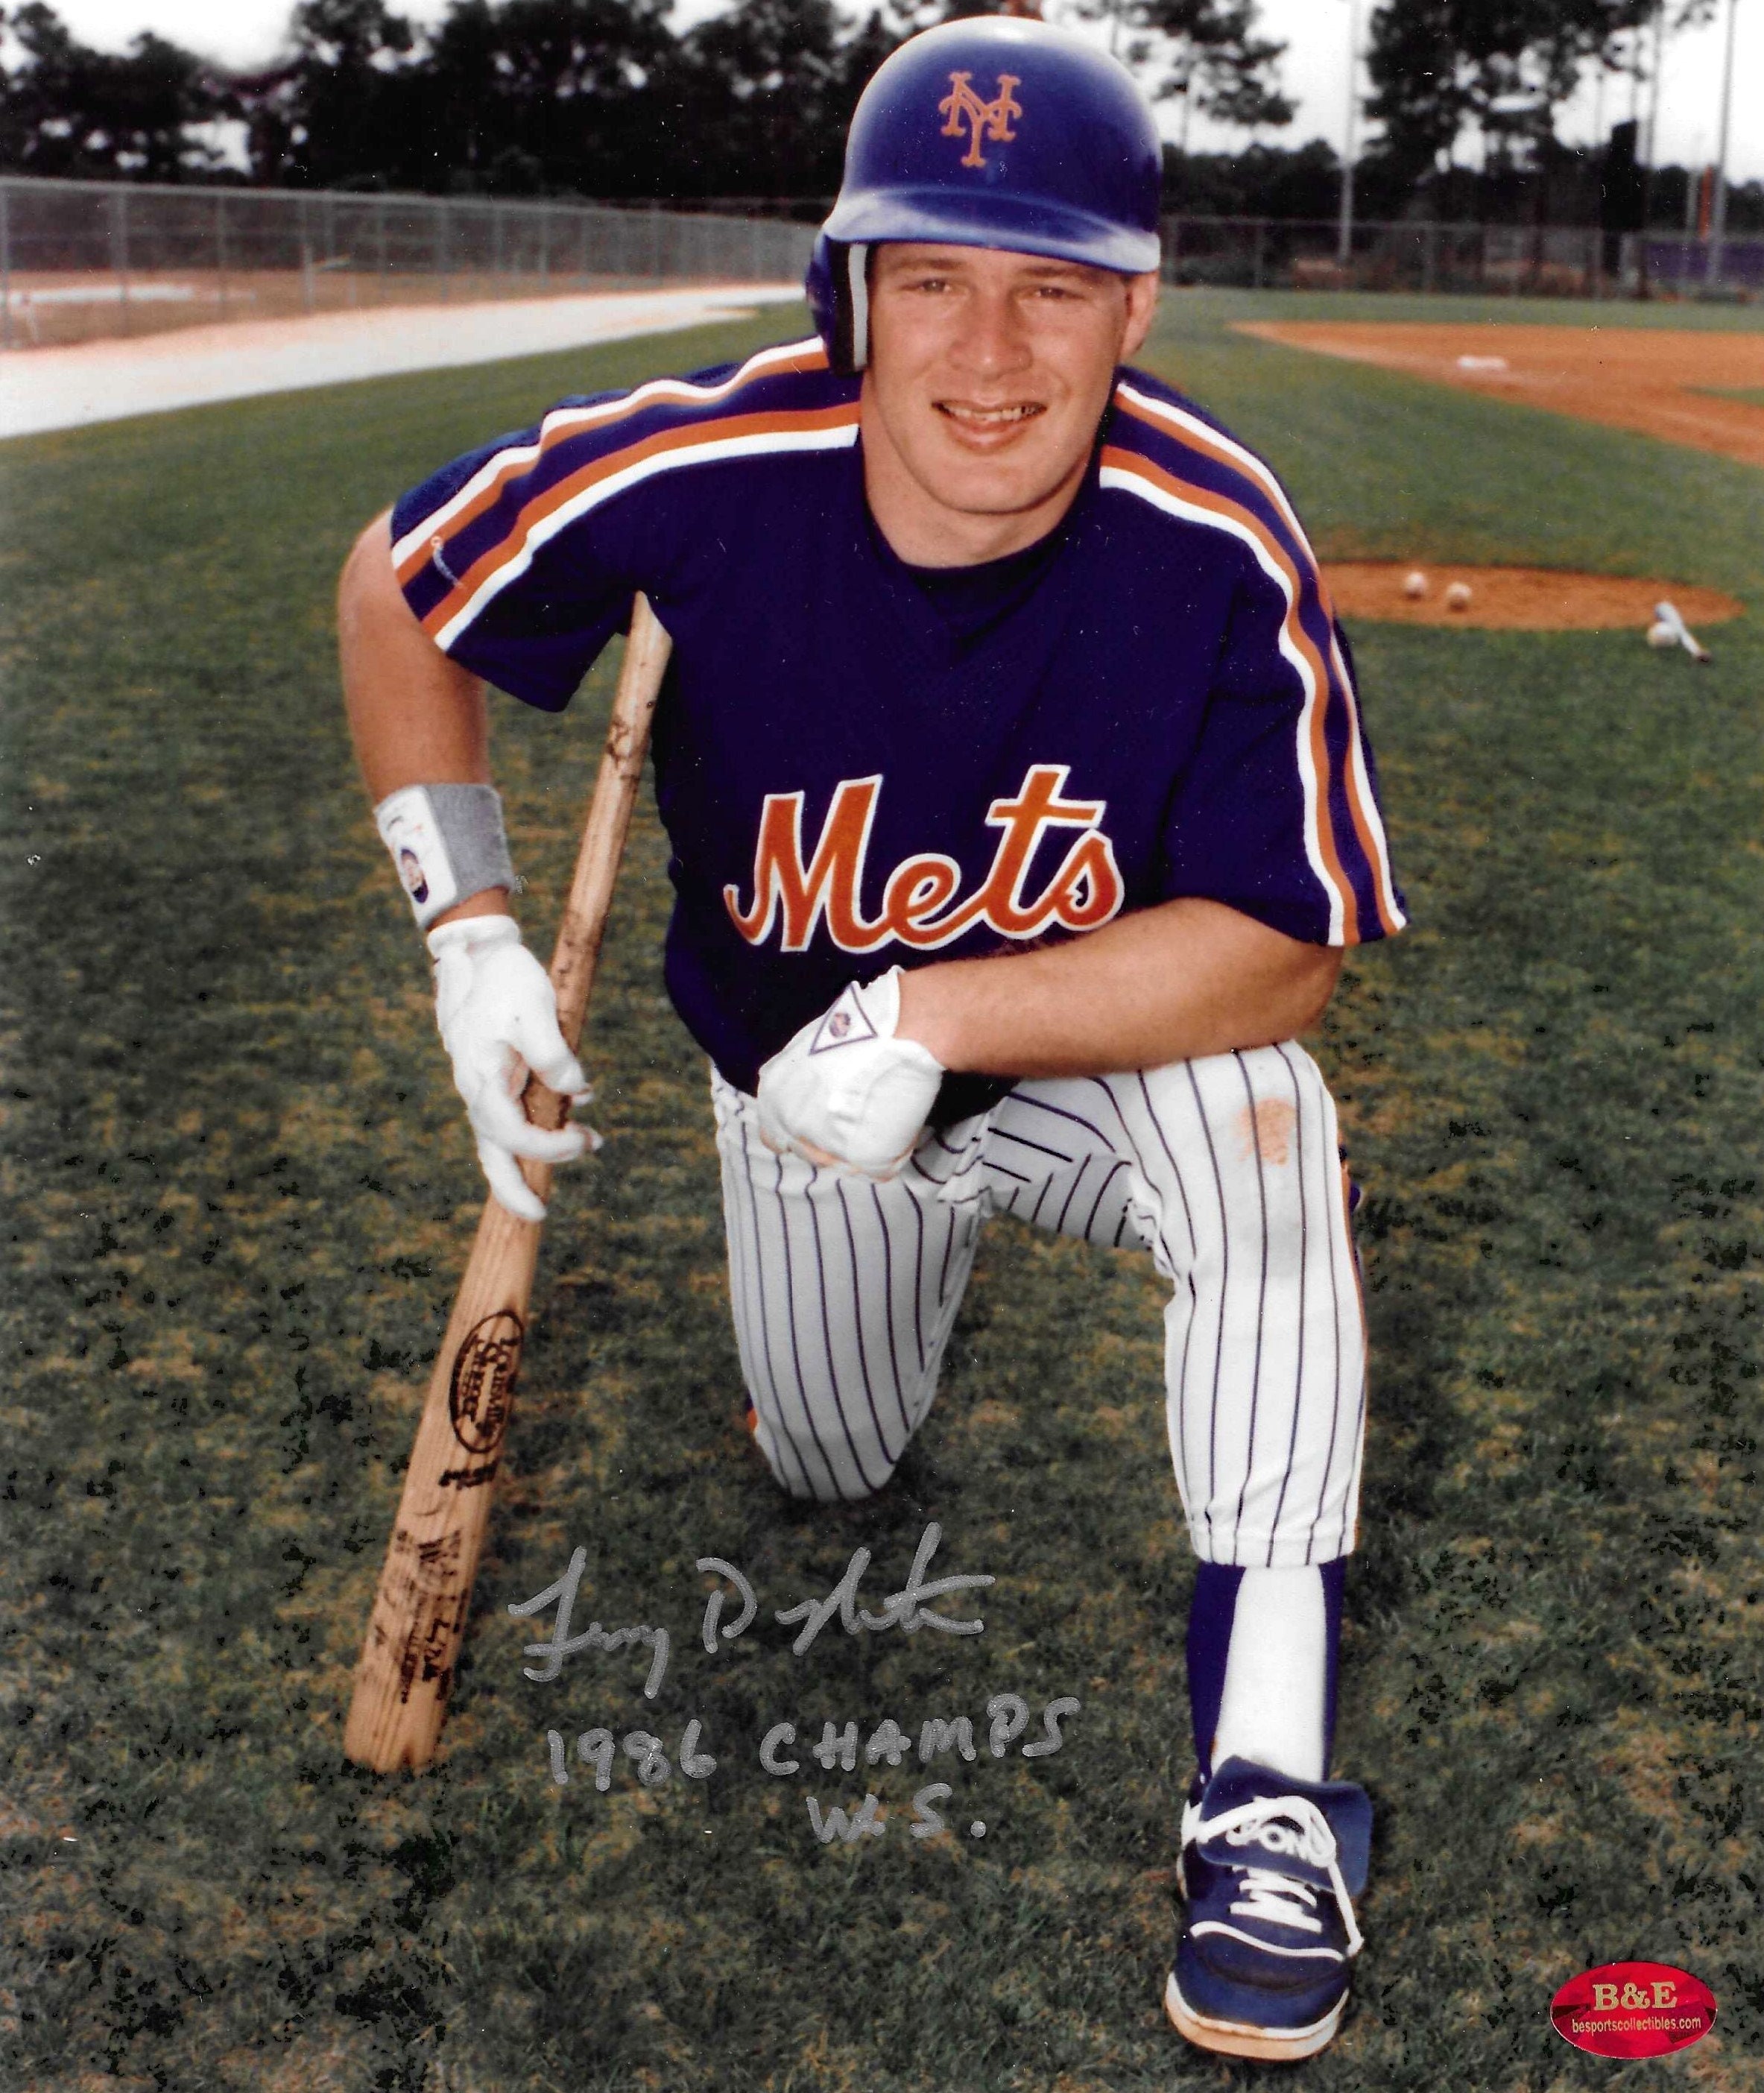 Lenny Dykstra, NY Mets, Signed 8x10 Photograph